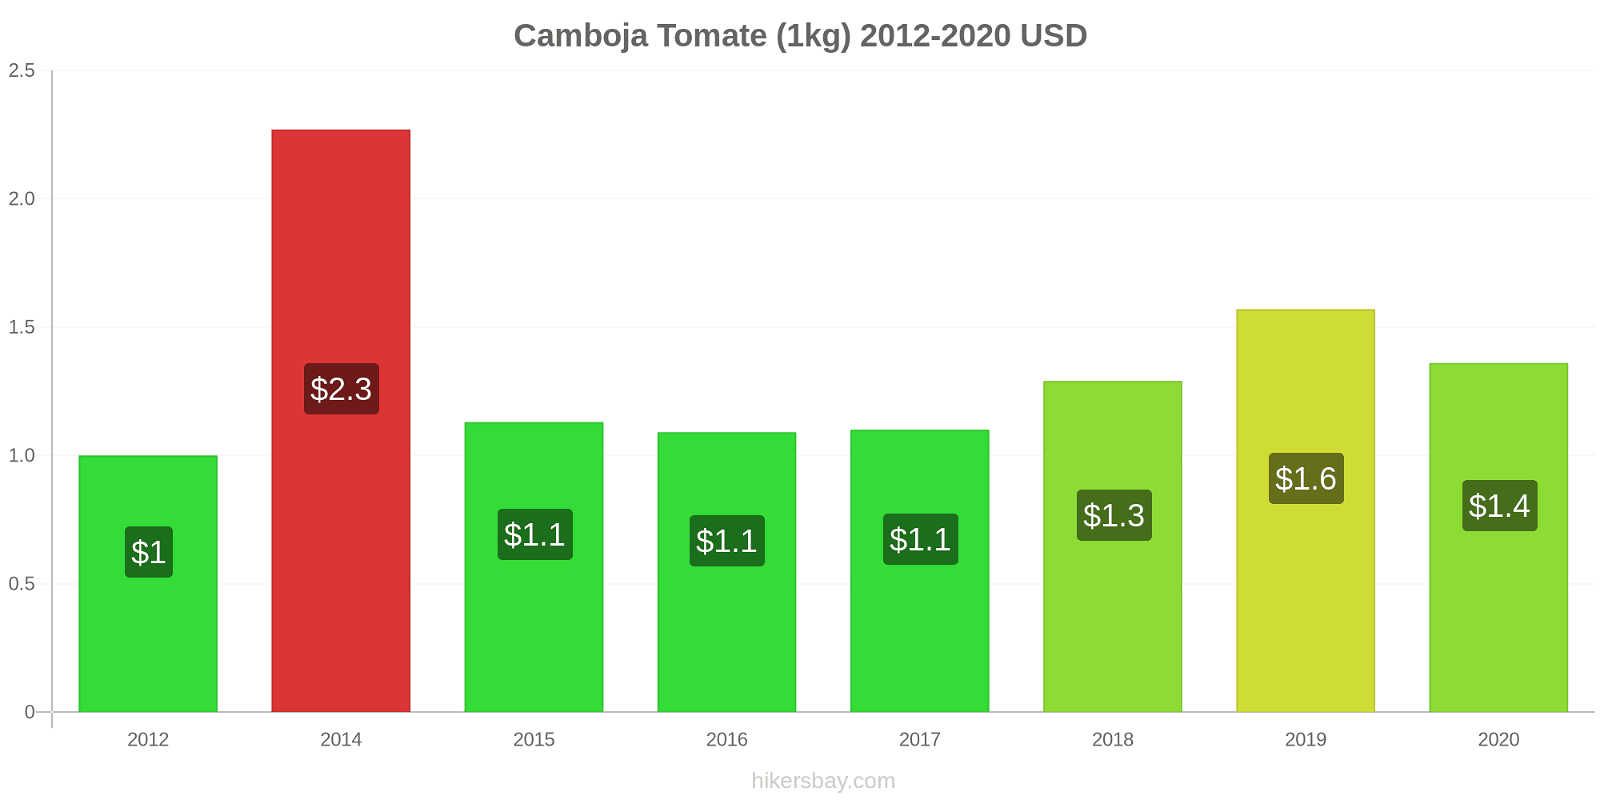 Camboja variação de preço Tomate (1kg) hikersbay.com